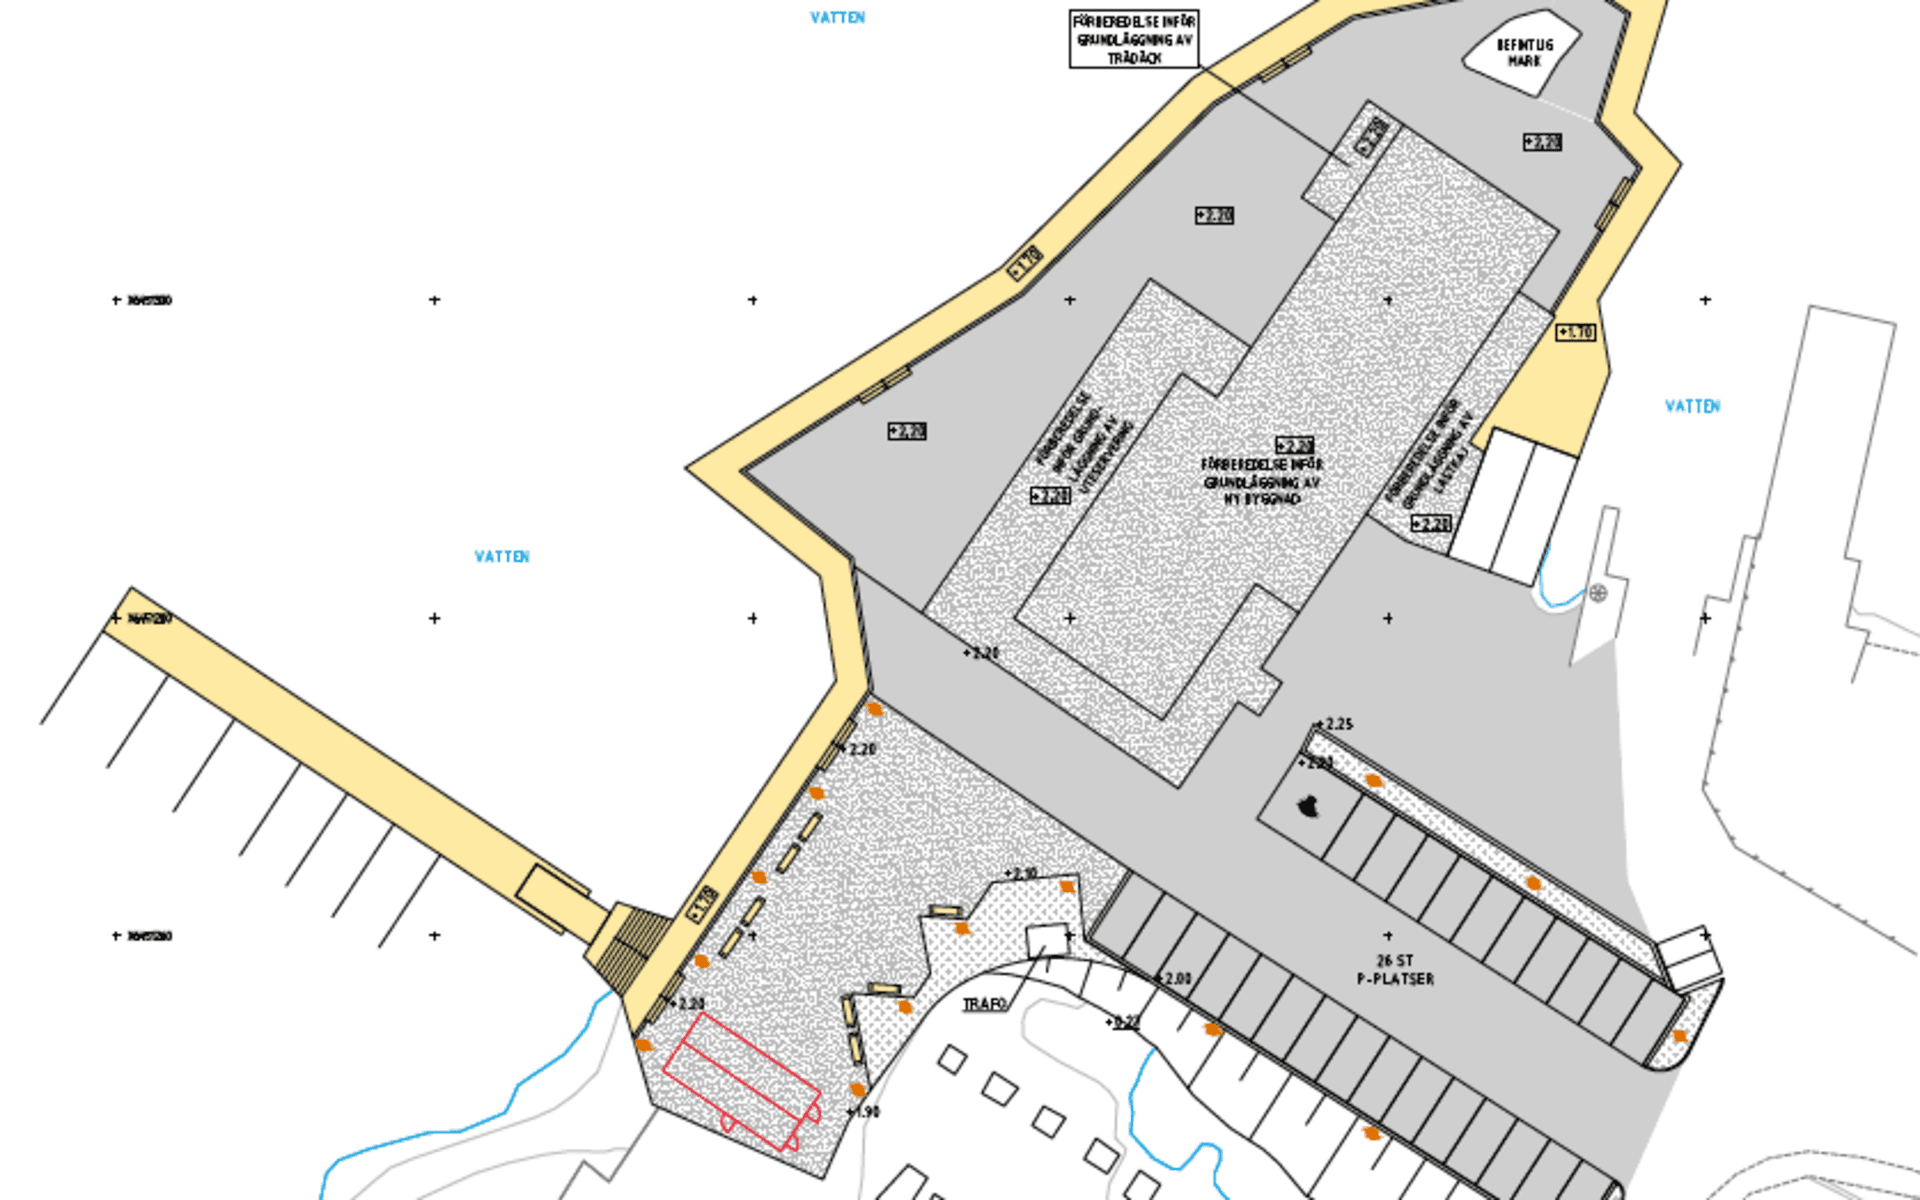 Så här kommer det se ut när planen är utbyggd, den gula strecken är kajen, den lilla vita rutan till höger är platsen där fårhuset står i dag. 